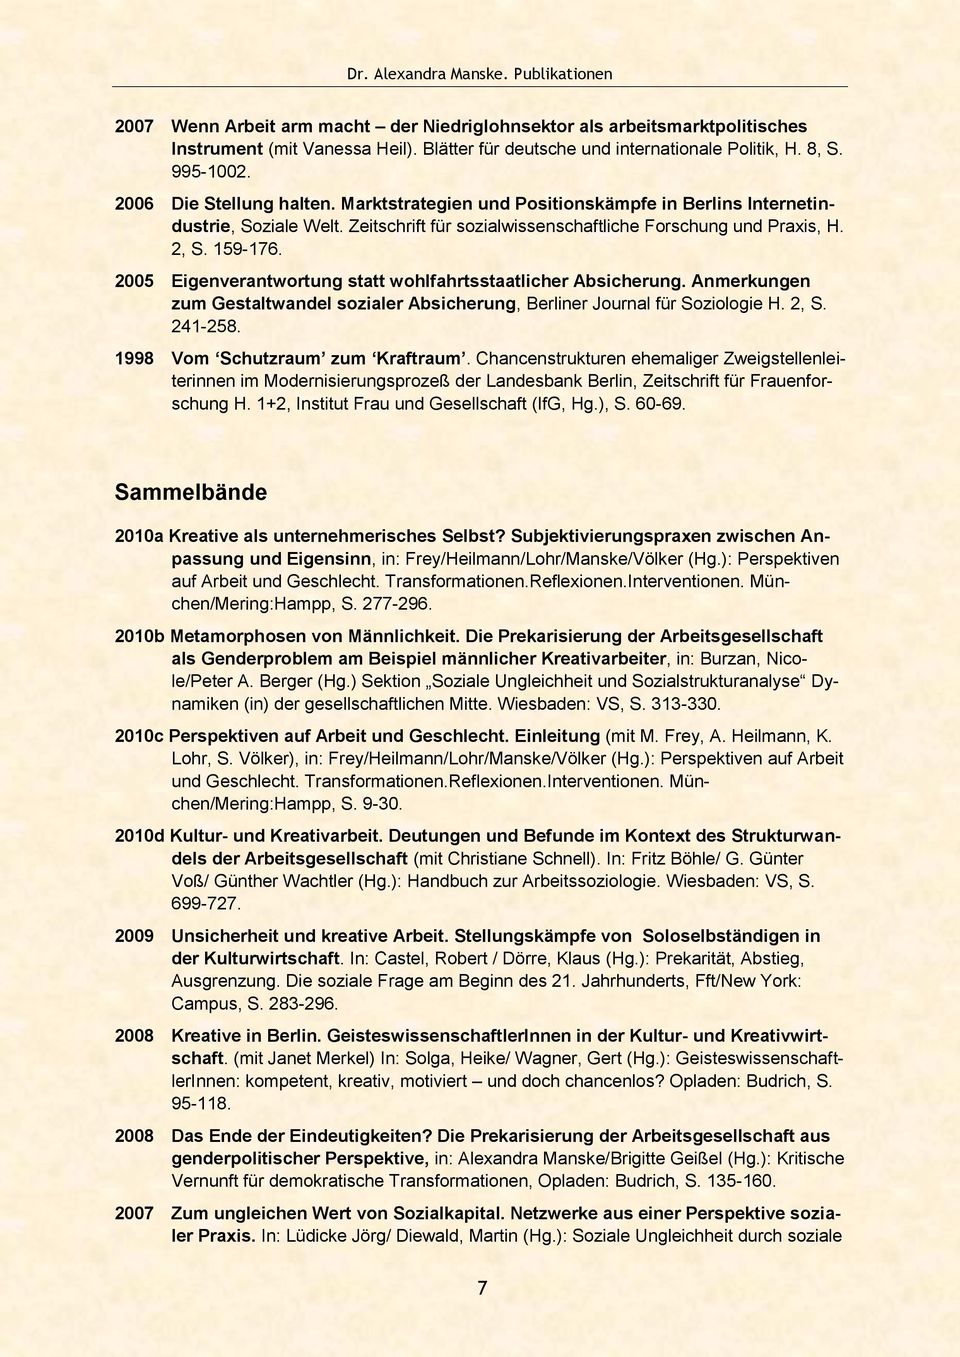 159-176. 2005 Eigenverantwortung statt wohlfahrtsstaatlicher Absicherung. Anmerkungen zum Gestaltwandel sozialer Absicherung, Berliner Journal für Soziologie H. 2, S. 241-258.